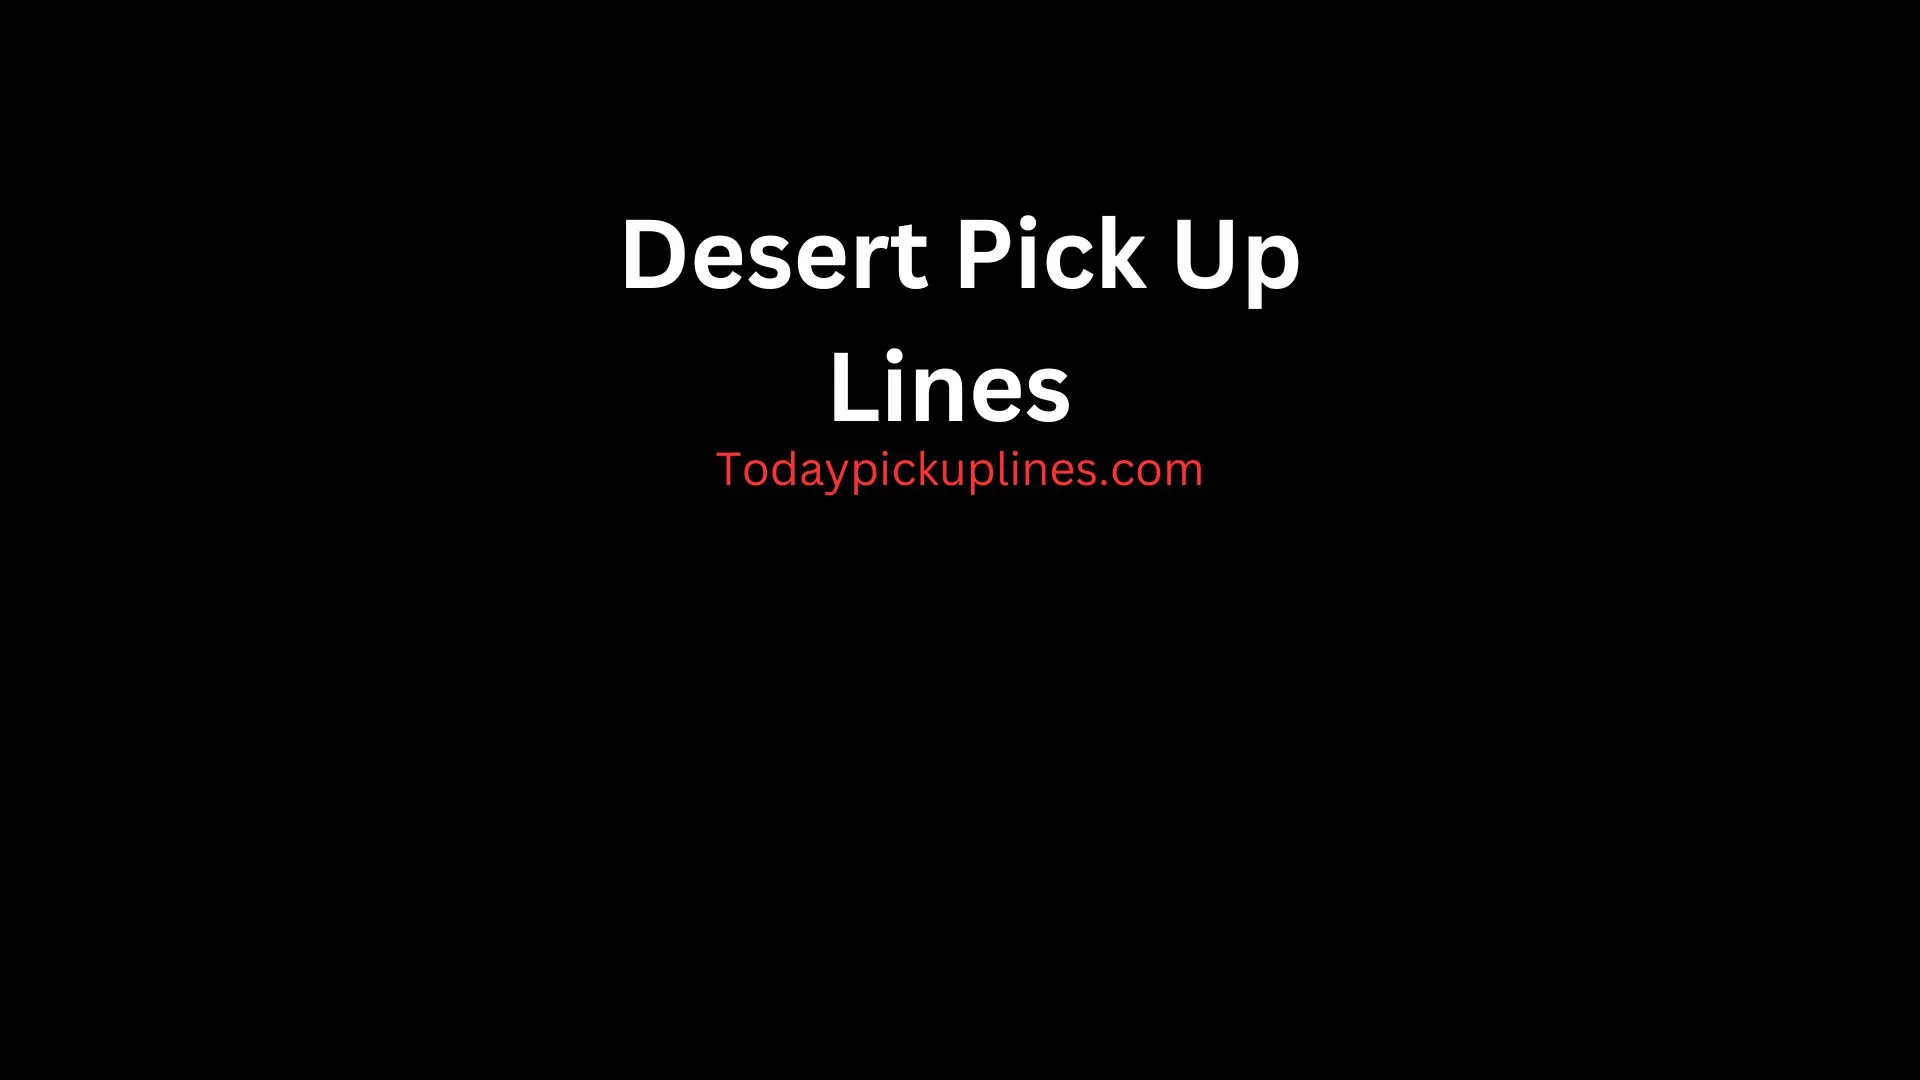 Desert Pick Up Lines